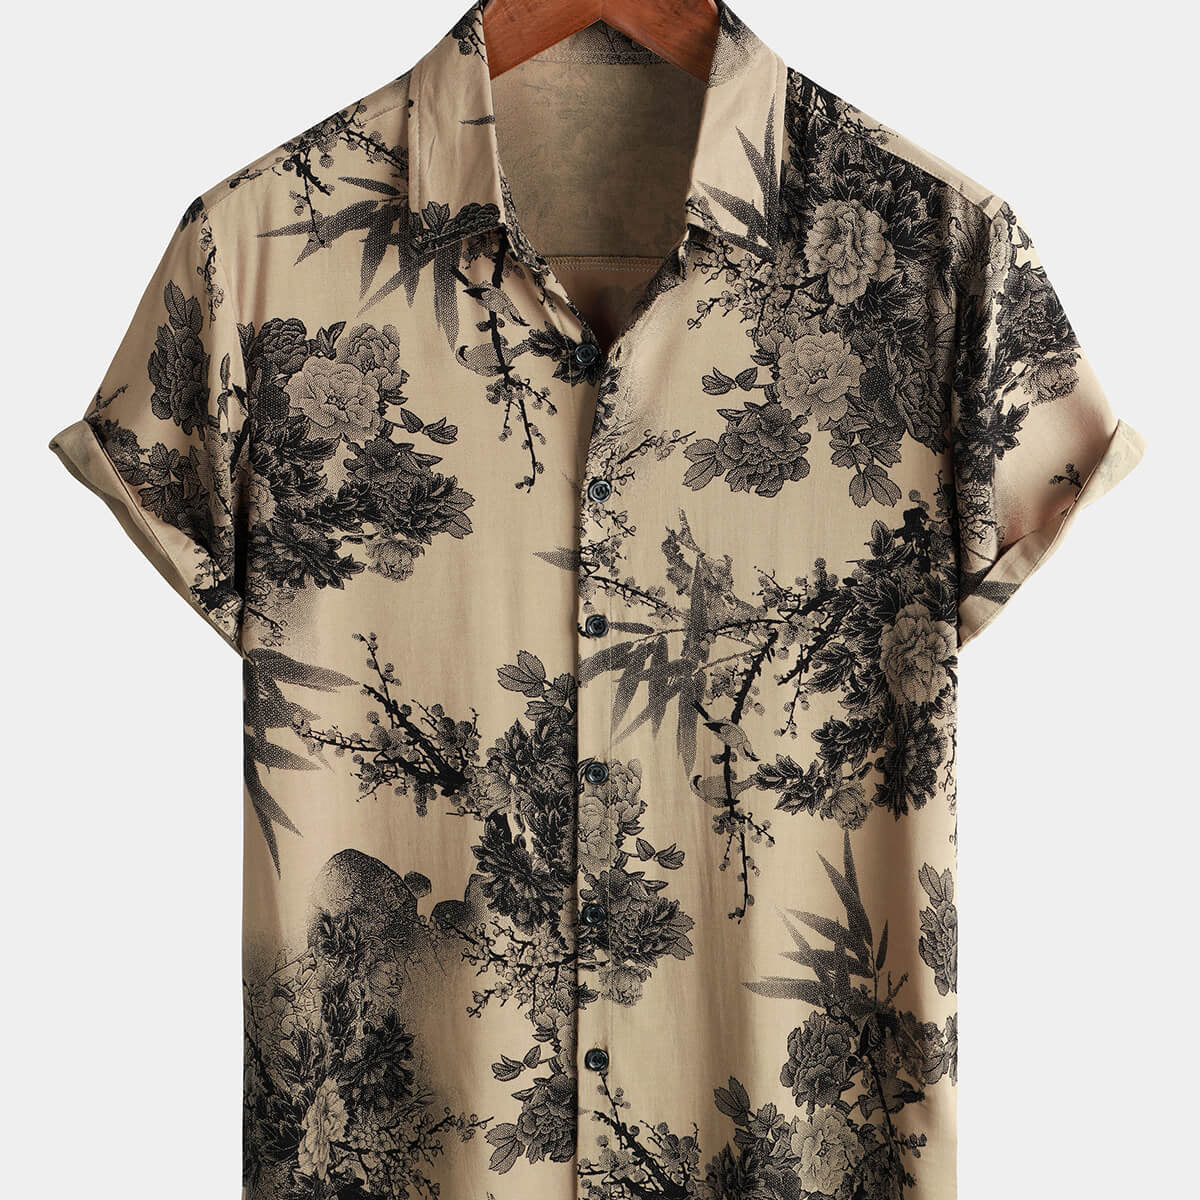 Men's Bamboo Floral VIntage Summer Hawaiian Rayon Holiday Button Up Short Sleeve Shirt